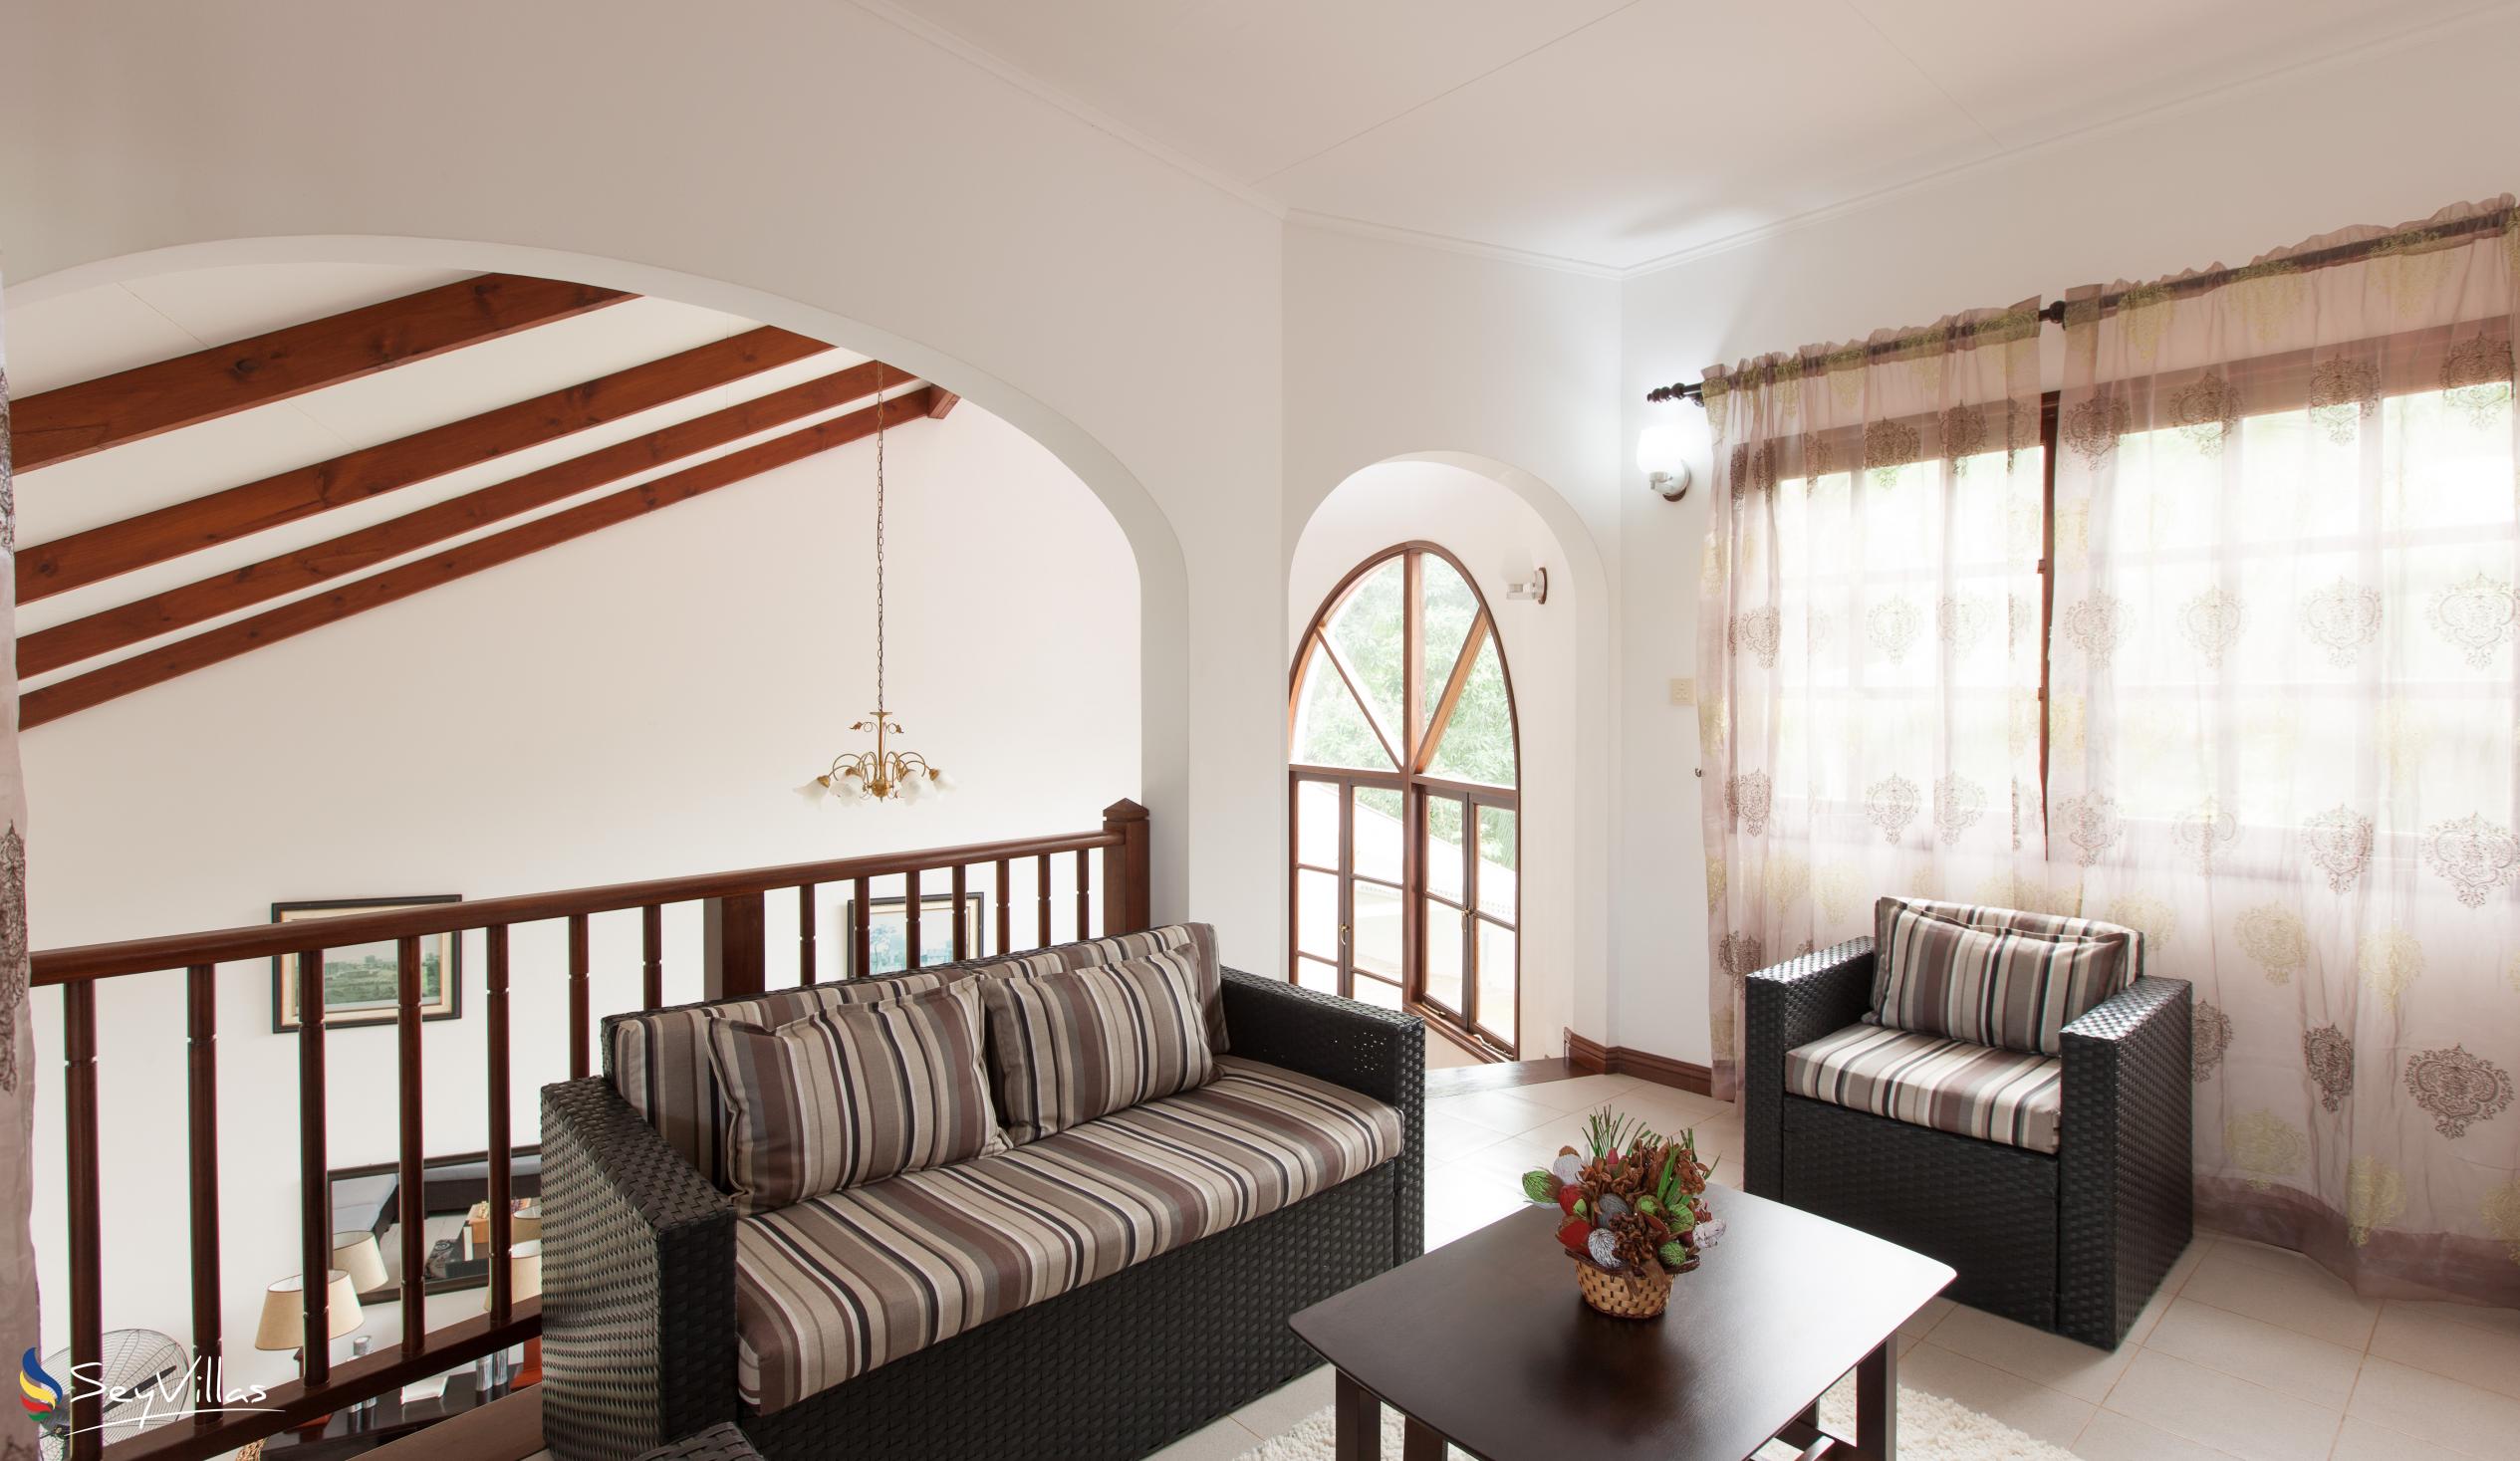 Photo 18: Villa Saint Sauveur - Indoor area - Praslin (Seychelles)